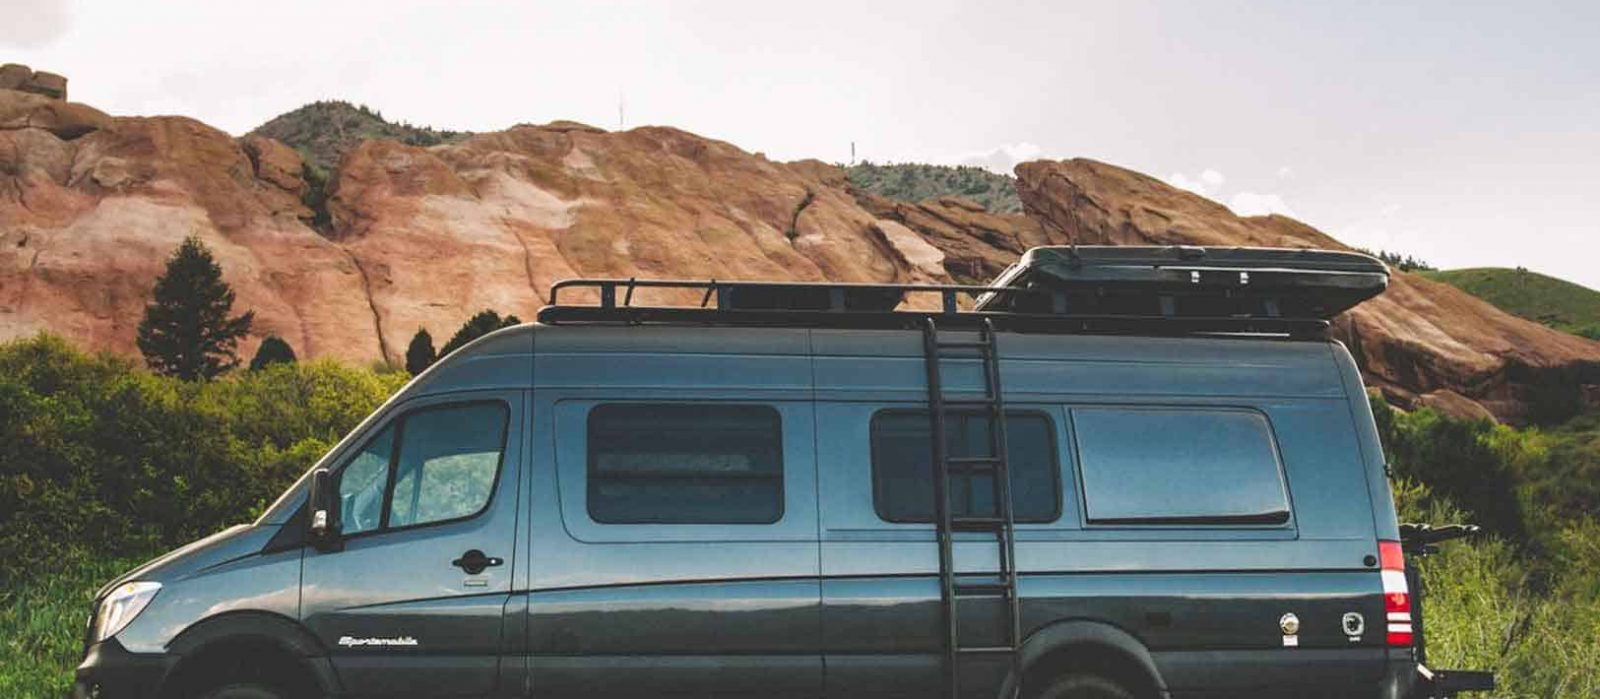 best vans for camper conversion